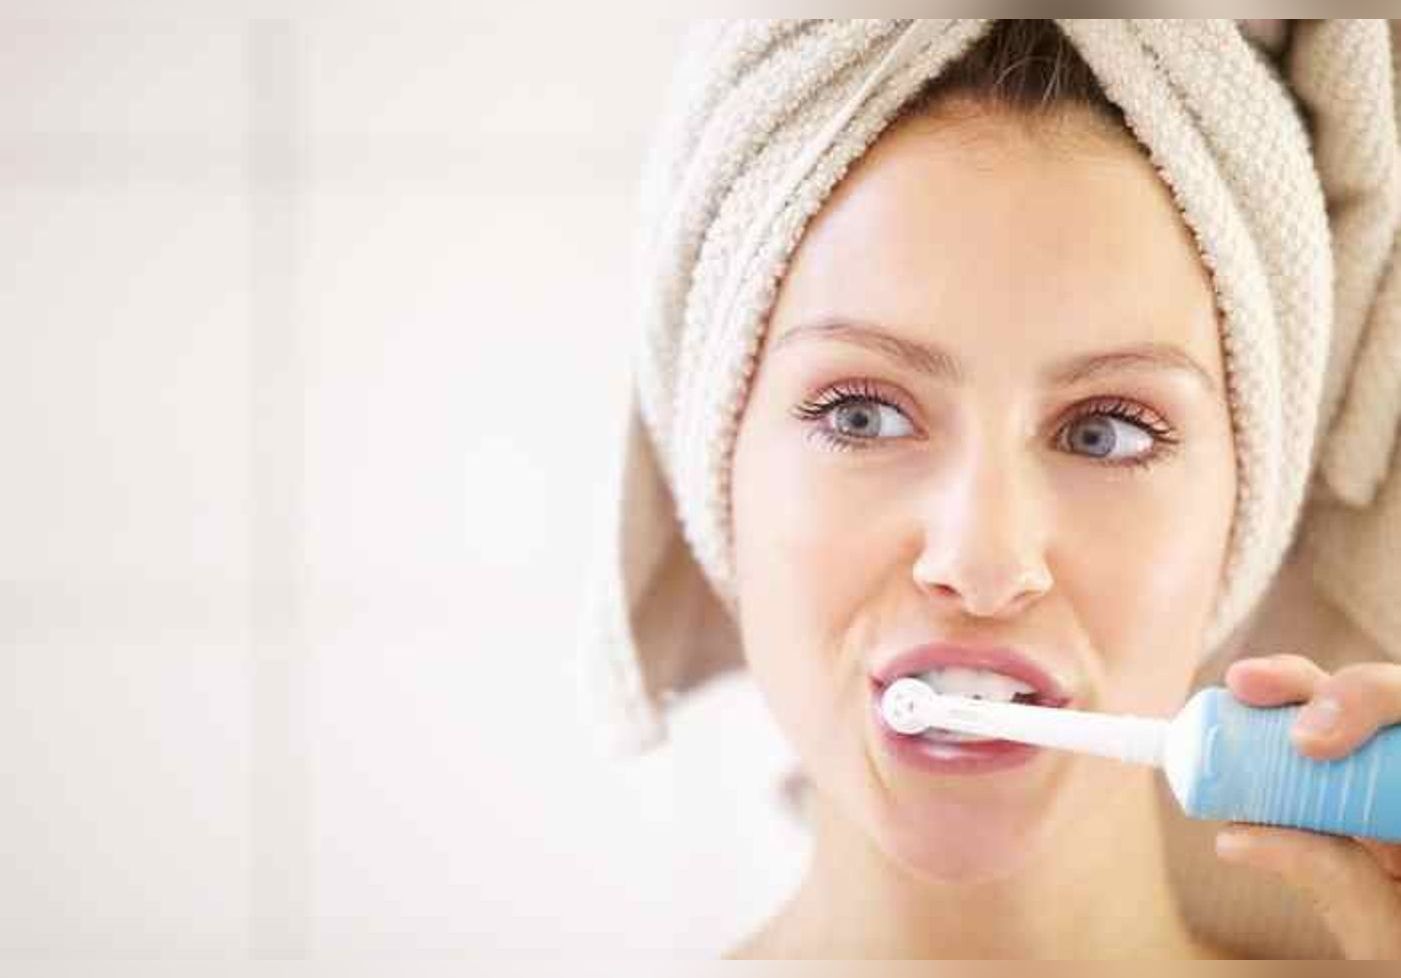 Des experts découvrent que prendre soin de ses dents c’est aussi prendre soin de son cerveau